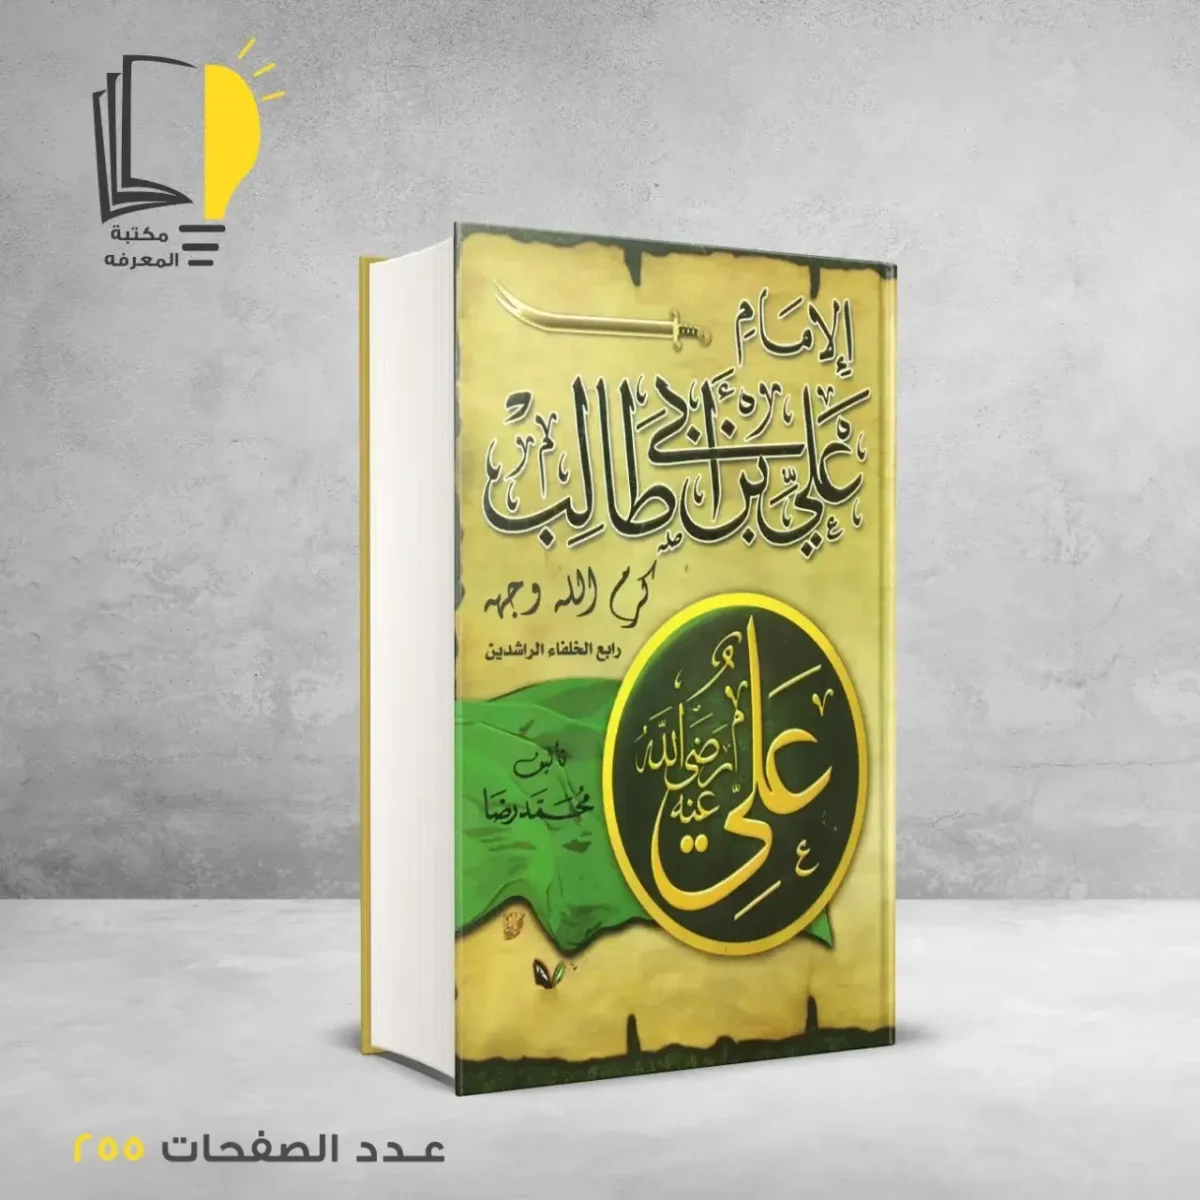 مكتبة المعرفة - كتاب الامام علي بن ابي طالب